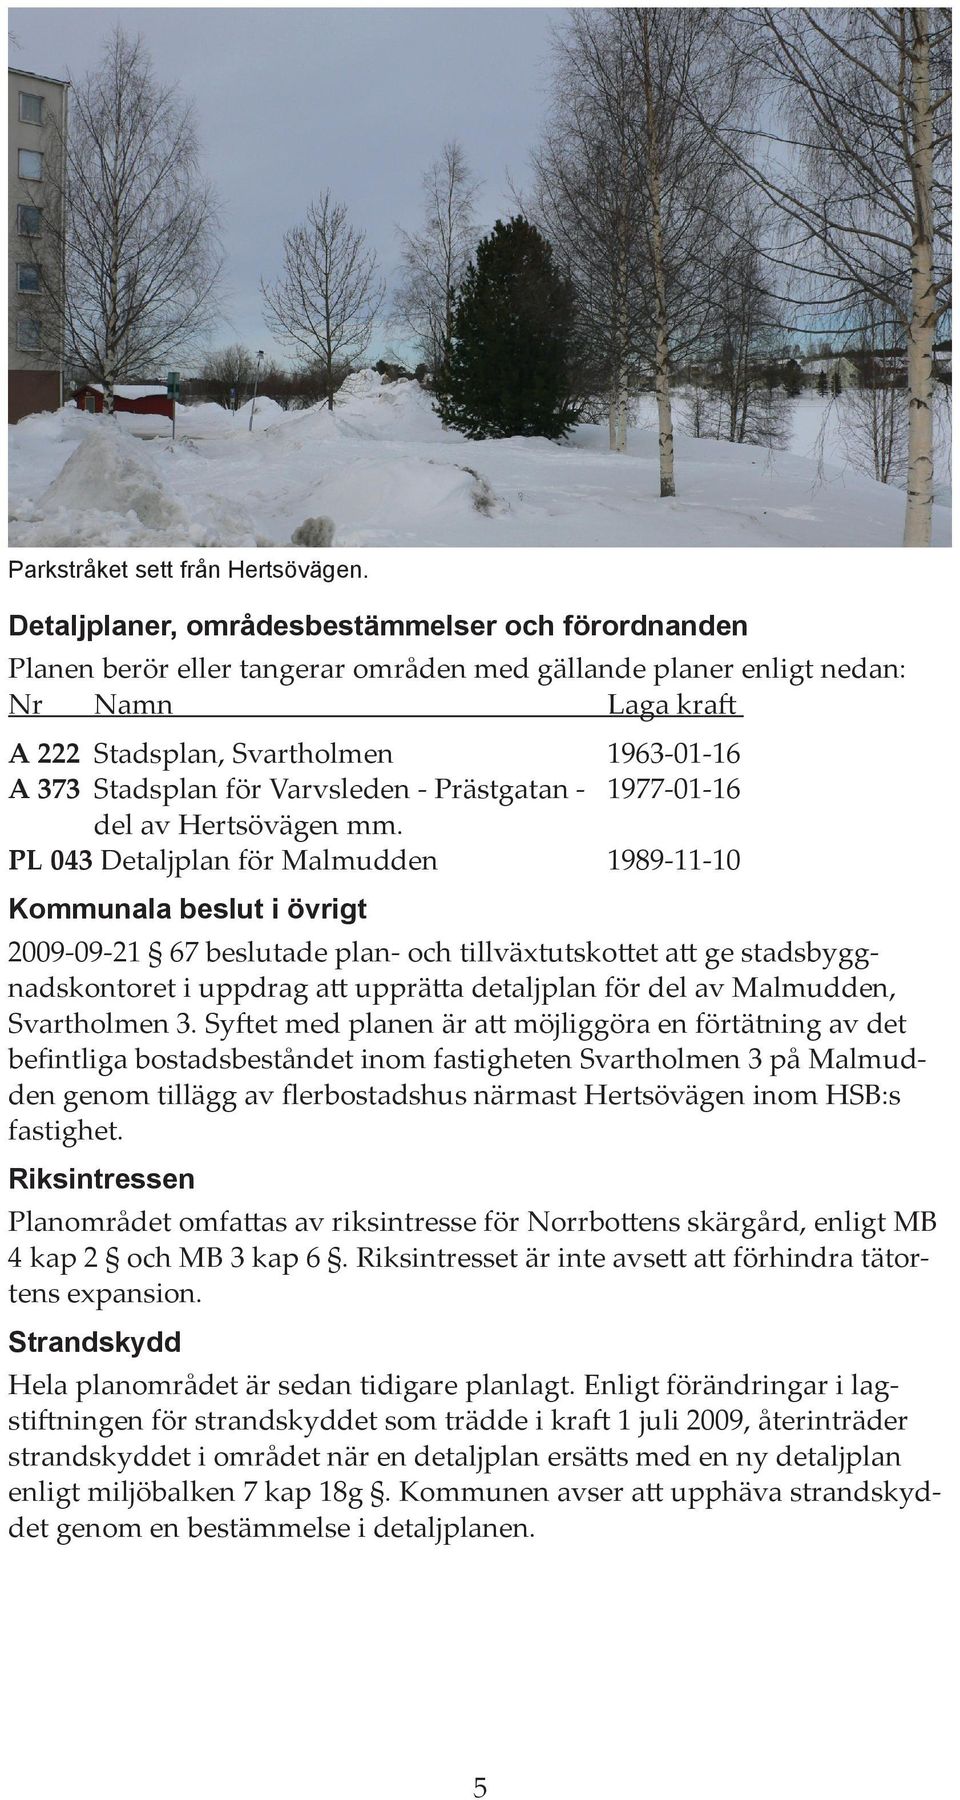 Varvsleden - Prästgatan - 1977-01-16 del av Hertsövägen mm.